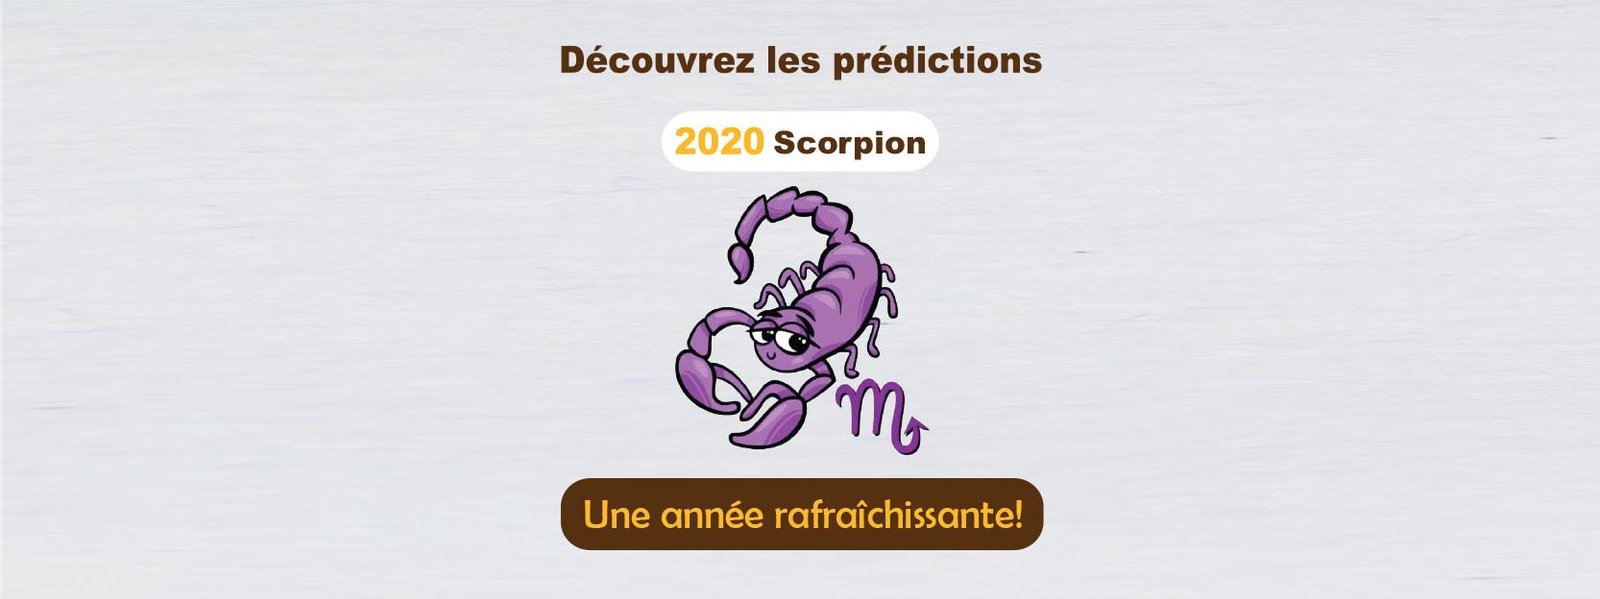 Horoscope 2020 signe scorpion au cabinet de voyance en ligne Astro lumière